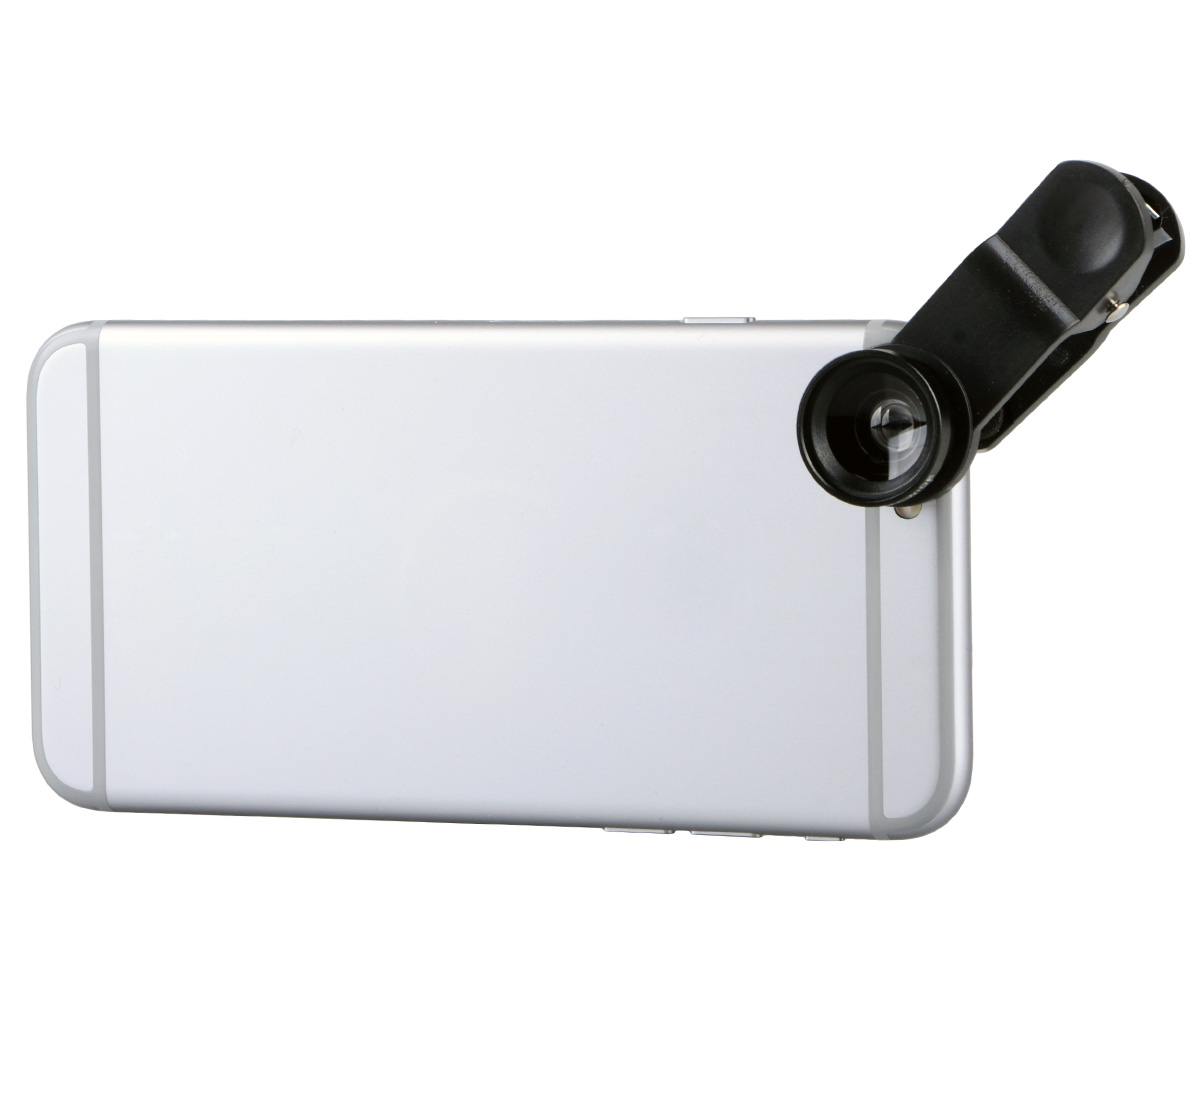 Smartphone Vorsatz-Objektiv-Set 3 in1 Weitwinkel, Fischauge und Makro mit Clip